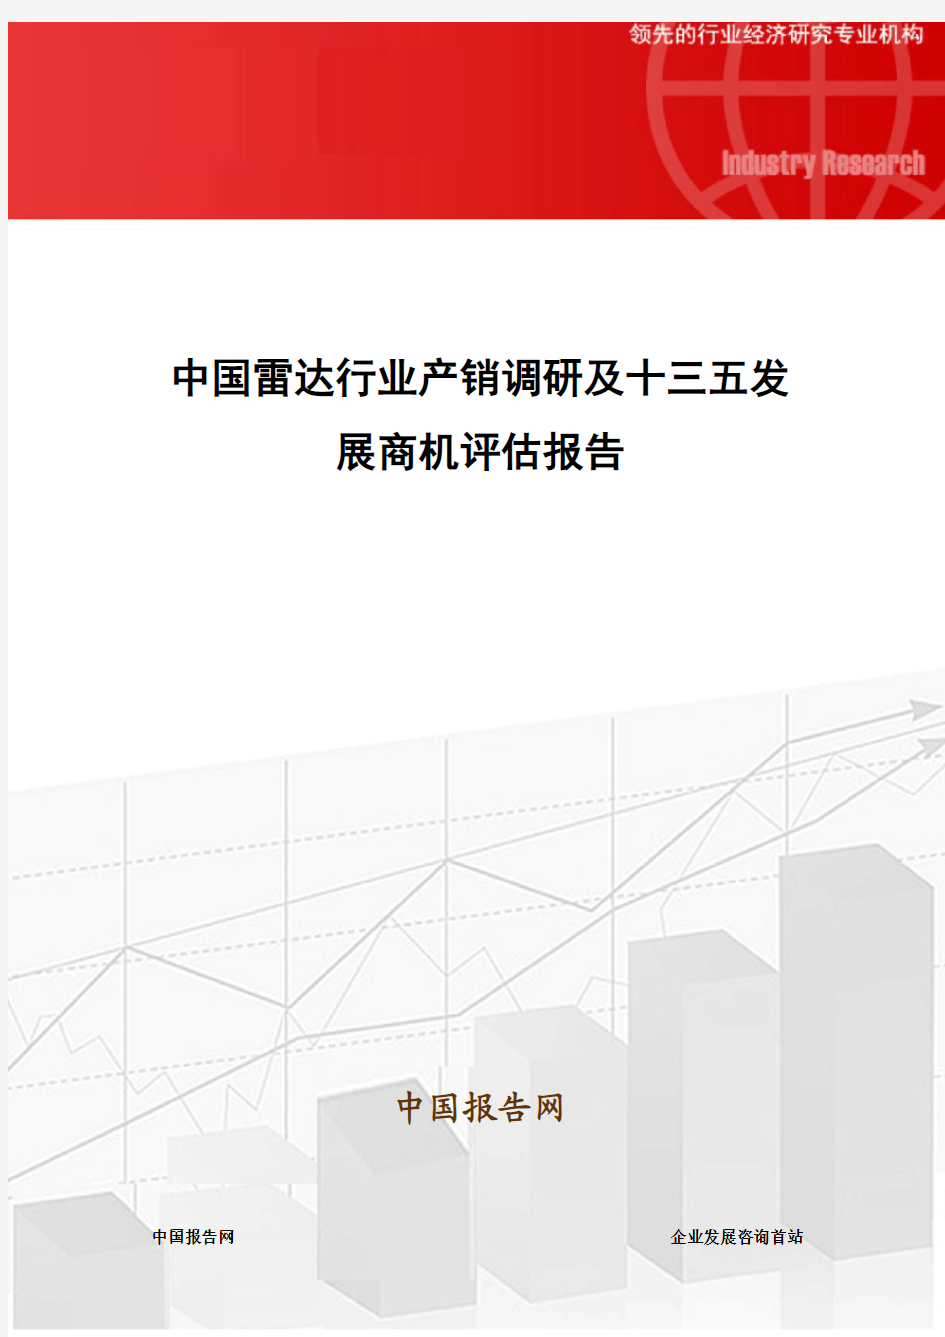 中国雷达行业产销调研及十三五发展商机评估报告